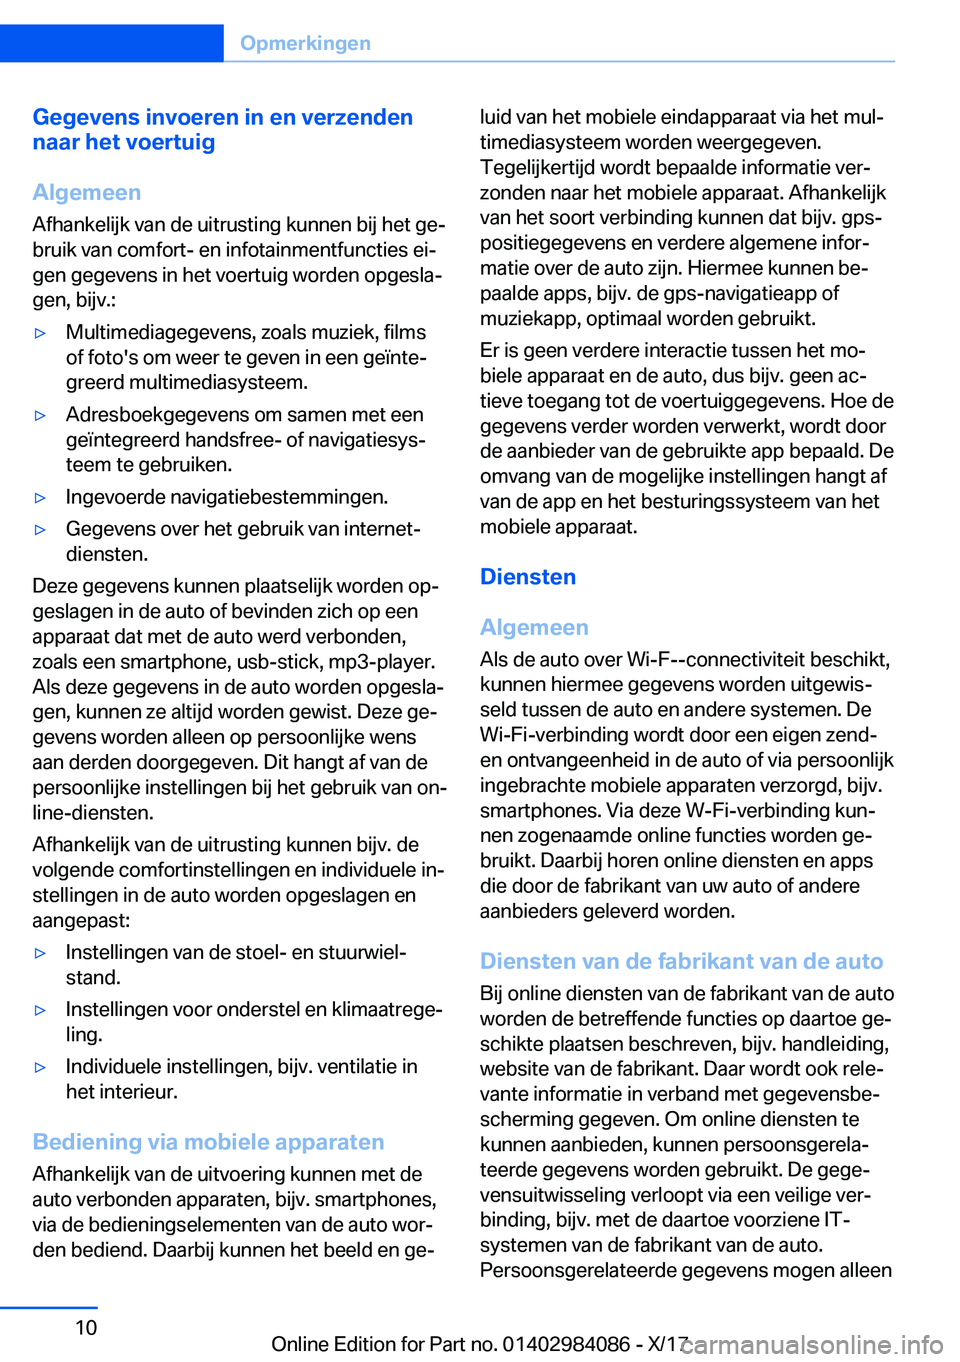 BMW 3 SERIES 2018  Instructieboekjes (in Dutch) �G�e�g�e�v�e�n�s��i�n�v�o�e�r�e�n��i�n��e�n��v�e�r�z�e�n�d�e�n
�n�a�a�r��h�e�t��v�o�e�r�t�u�i�g
�A�l�g�e�m�e�e�n
�A�f�h�a�n�k�e�l�i�j�k� �v�a�n� �d�e� �u�i�t�r�u�s�t�i�n�g� �k�u�n�n�e�n� �b�i�j�